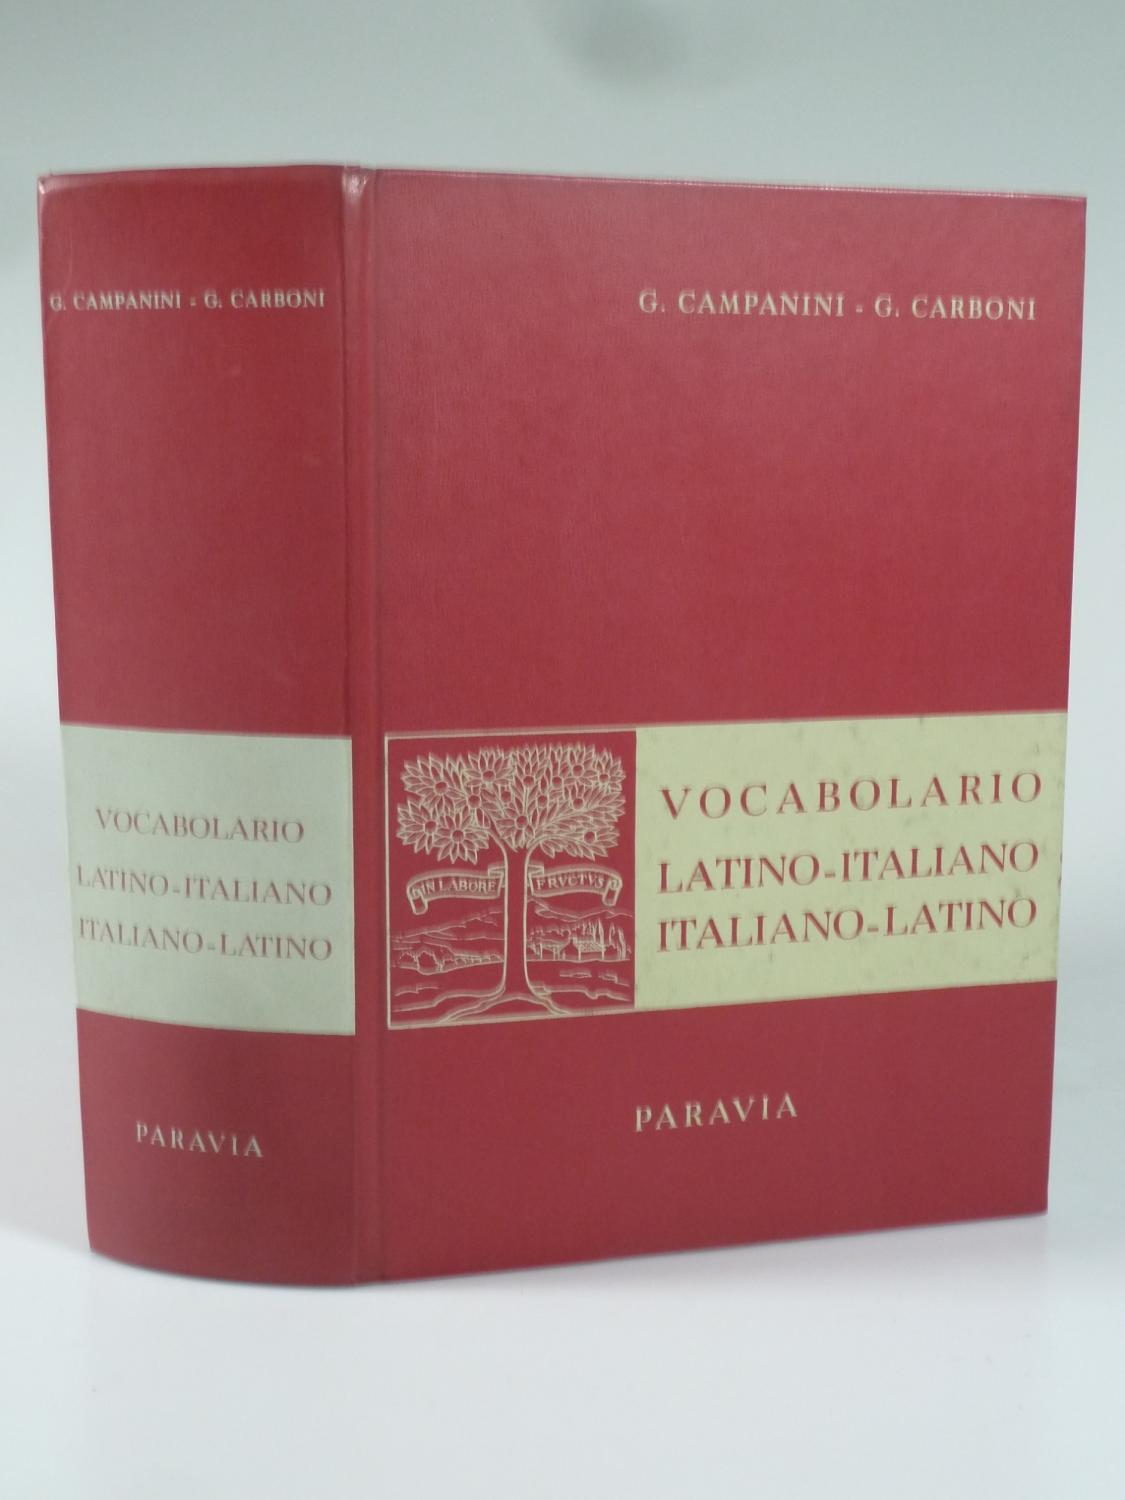 Vocabolario Latino-Italiano, Italiano-Latino. da CAMPANINI, G. E G